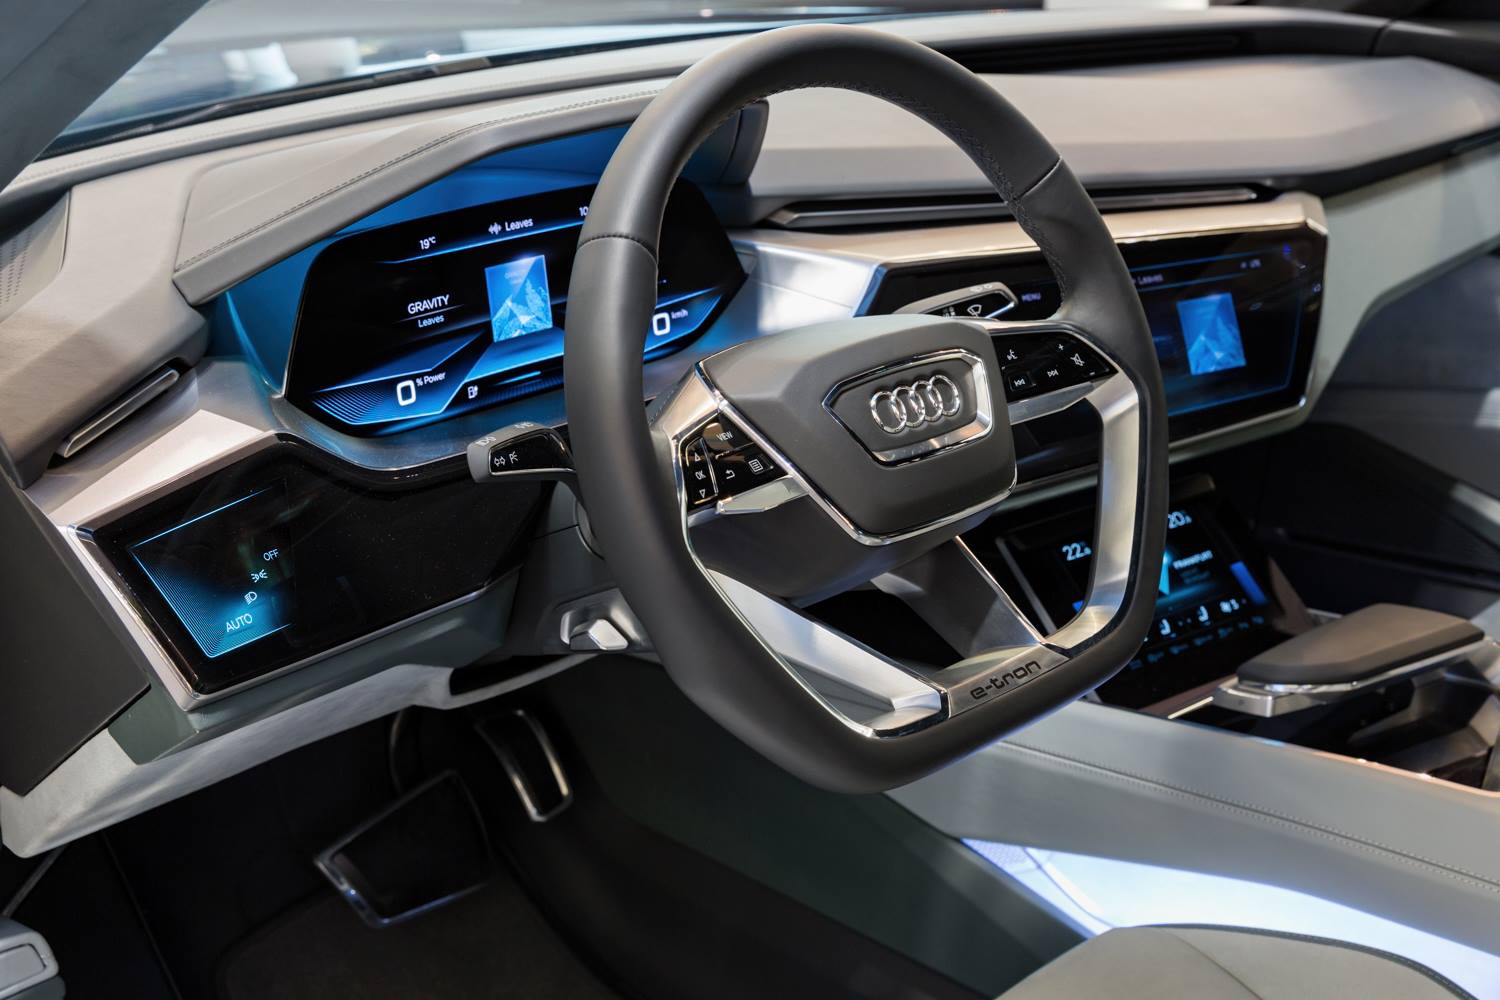 "أودي" A8 الجديدة ستكون أول موديل إنتاج بمقصورة أودي الافتراضية Audi 5